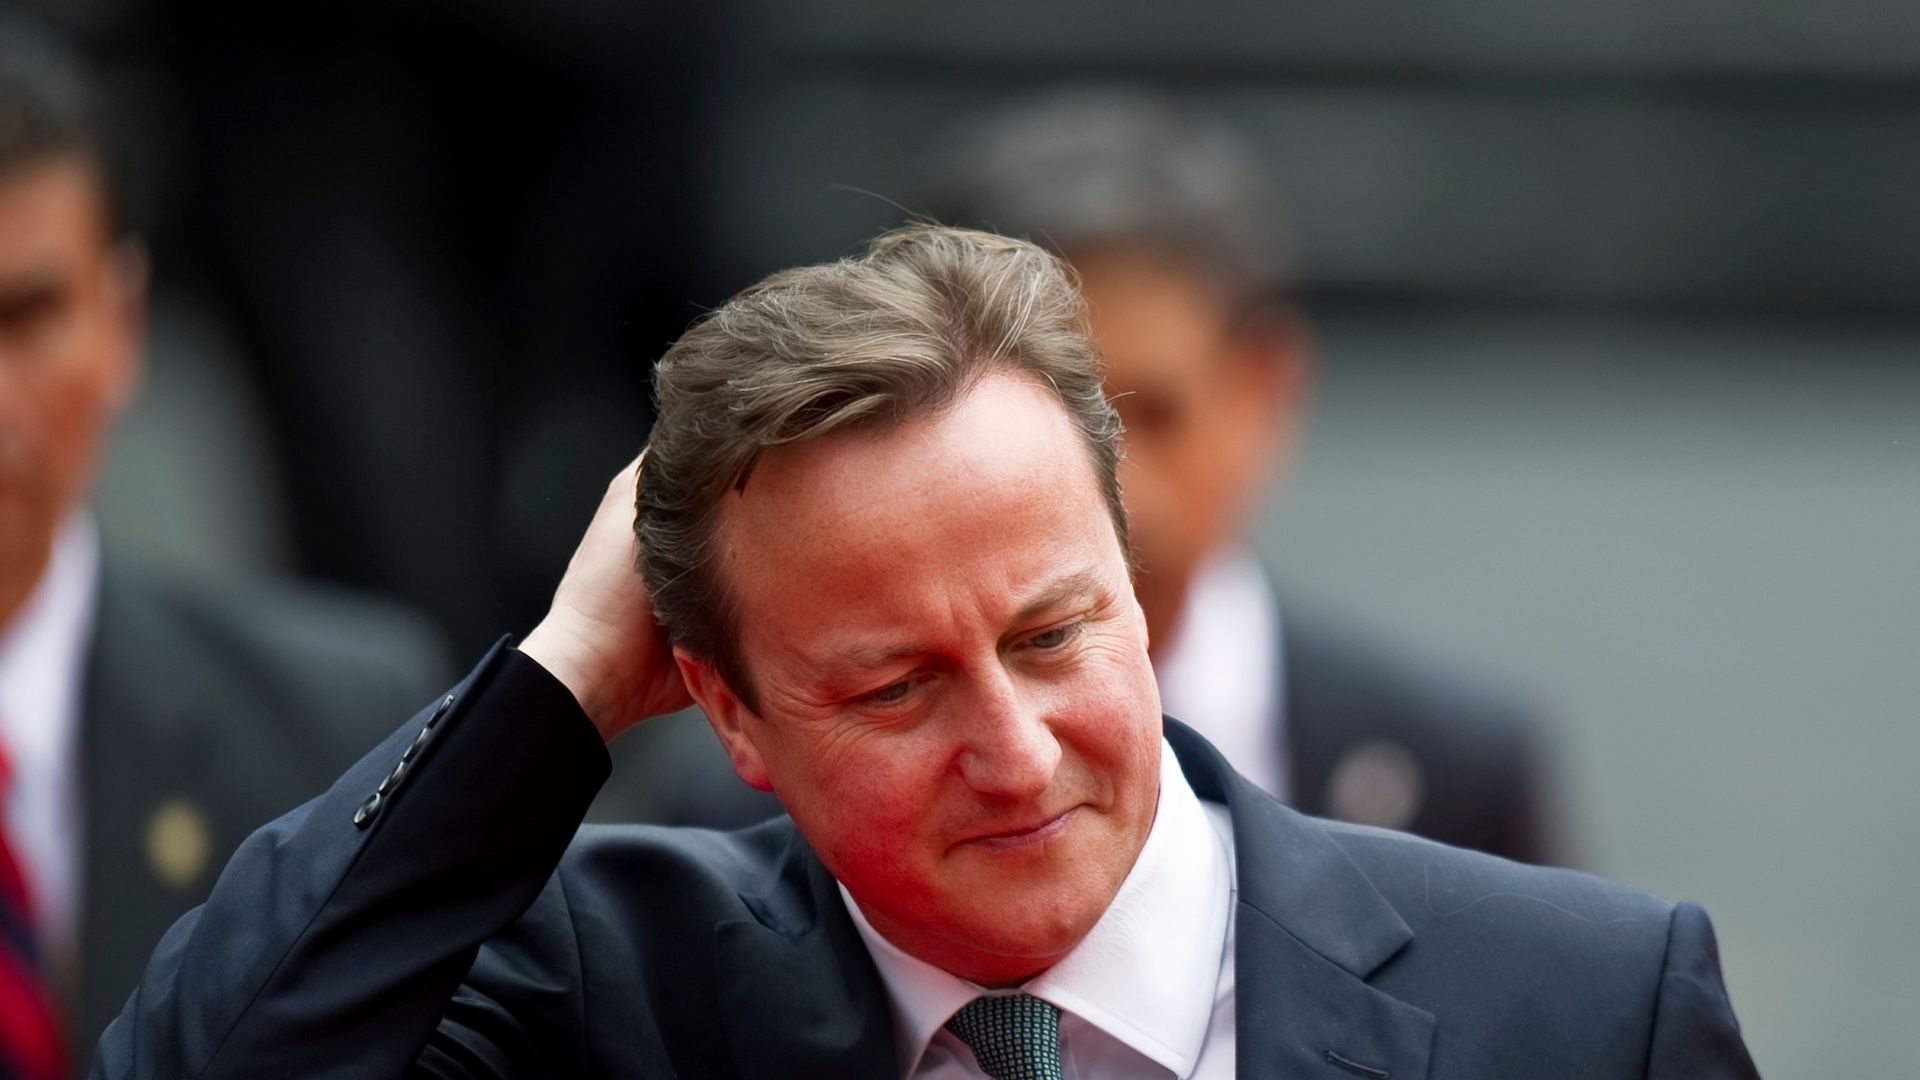 Former British prime minister David Cameron - Credit: AFP via Getty Images